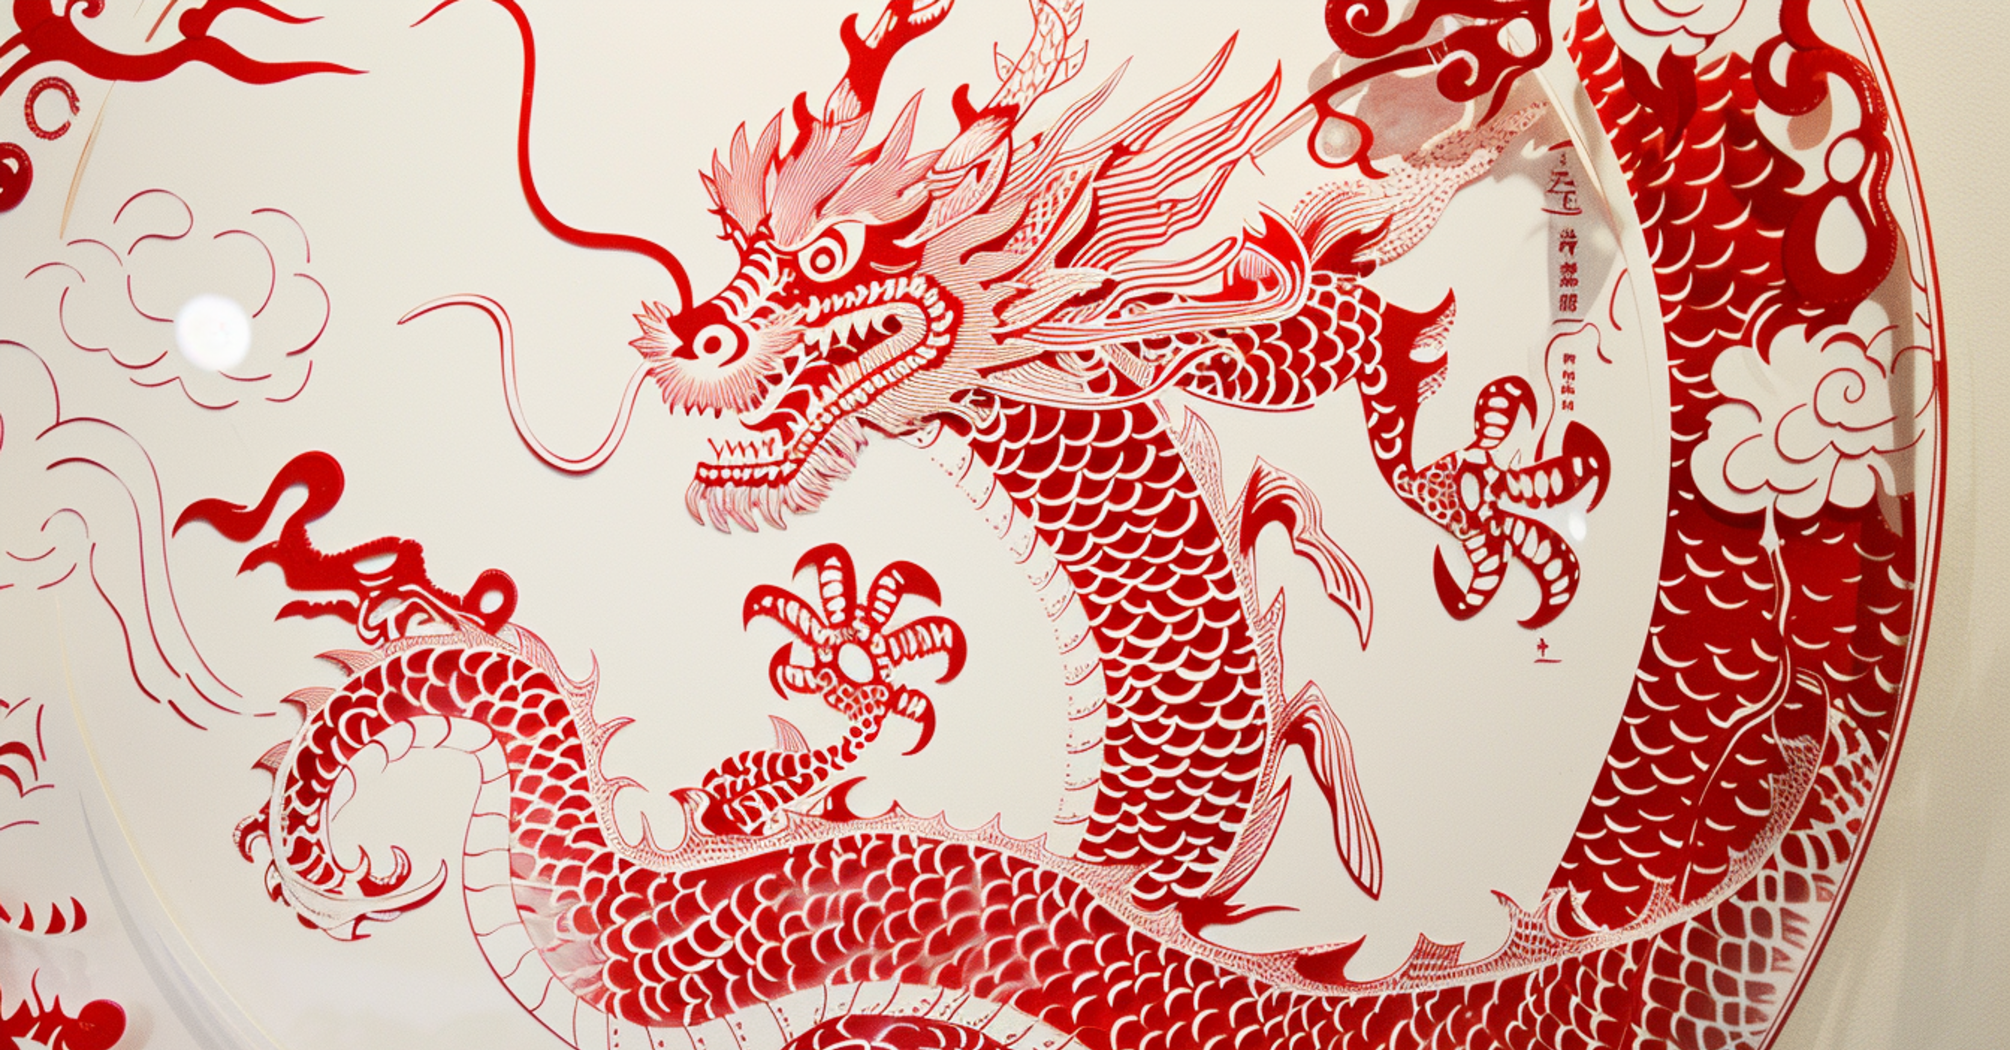 Будьте обережні з фінансами: китайський гороскоп на 6 березня